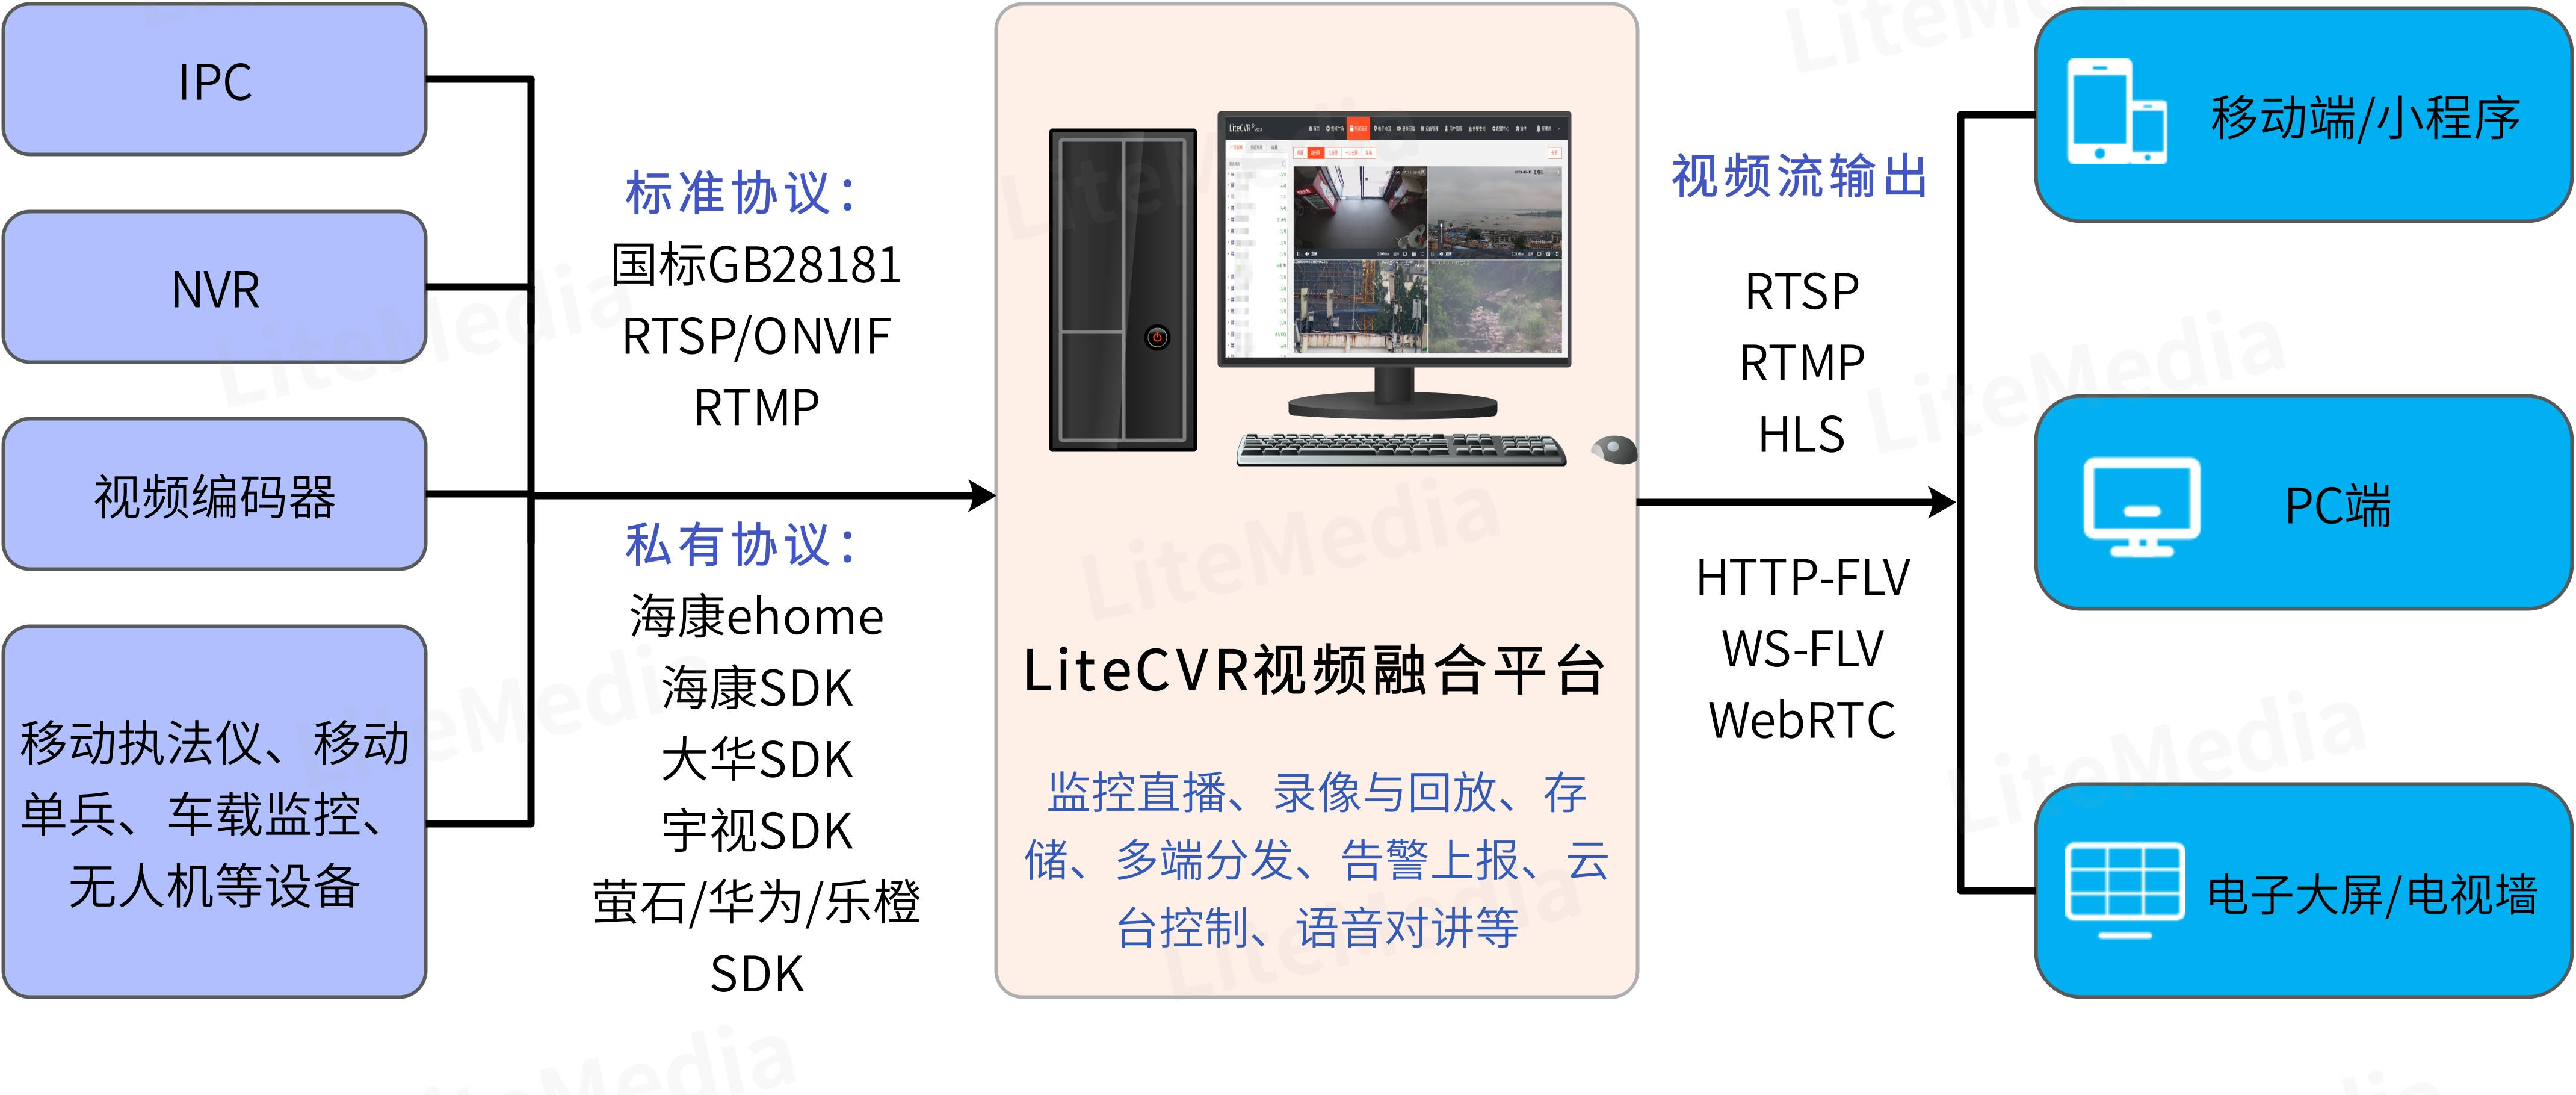 视频监控LiteCVR管理平台分发RTSP流时，视频起播慢该如何优化？_ios